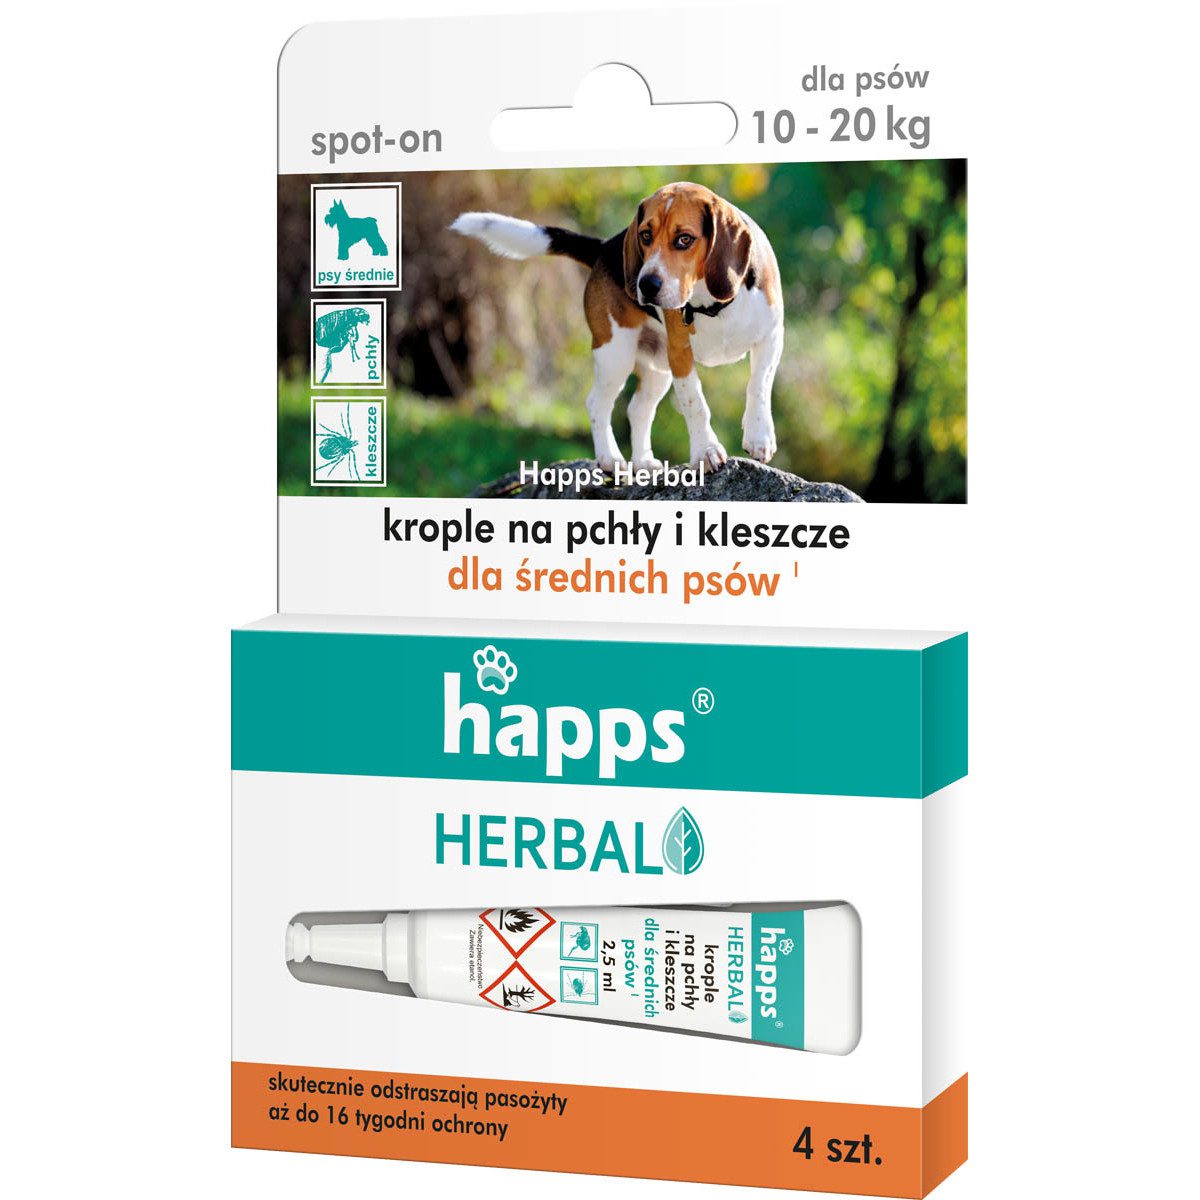 Happs HERBAL – krople na pchły i kleszcze dla średnich psów